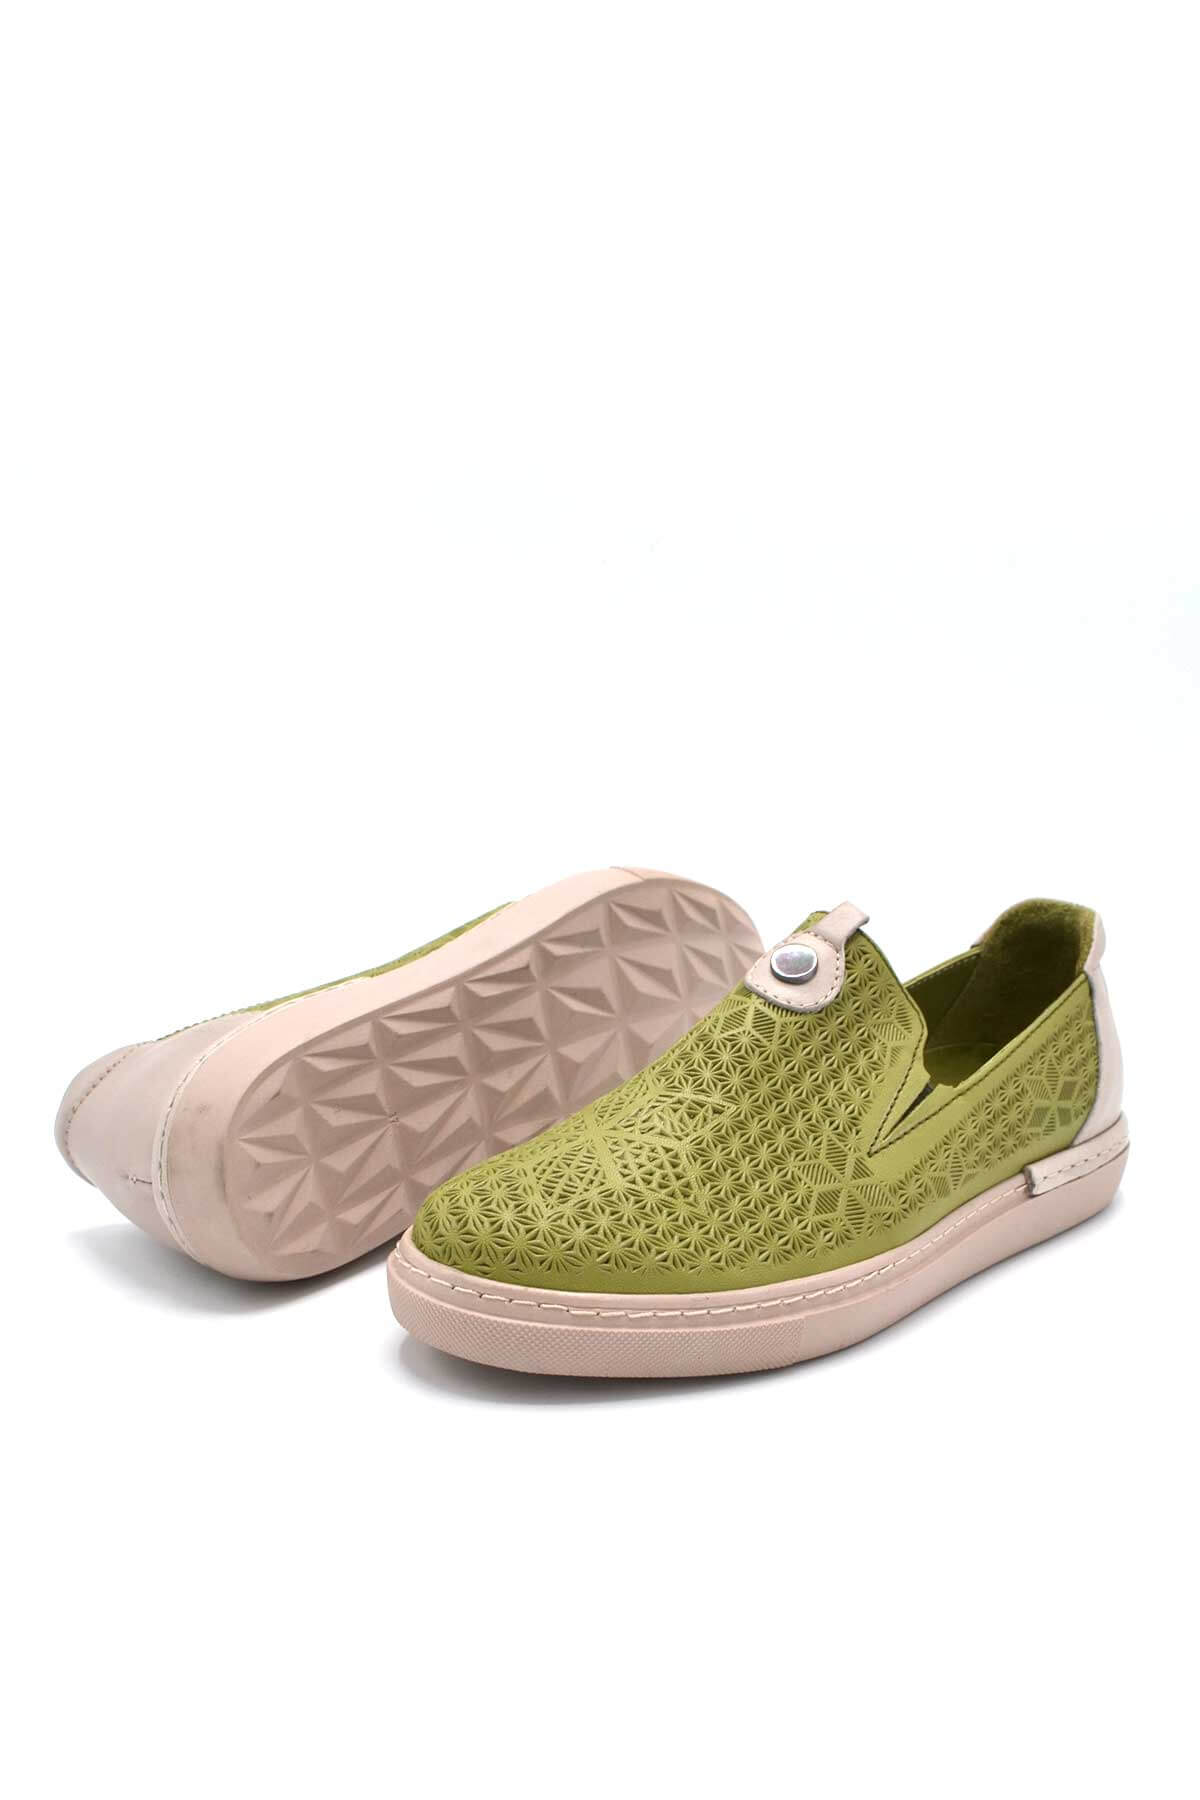 Kadın Spor Deri Sneakers Yeşil 2211302Y